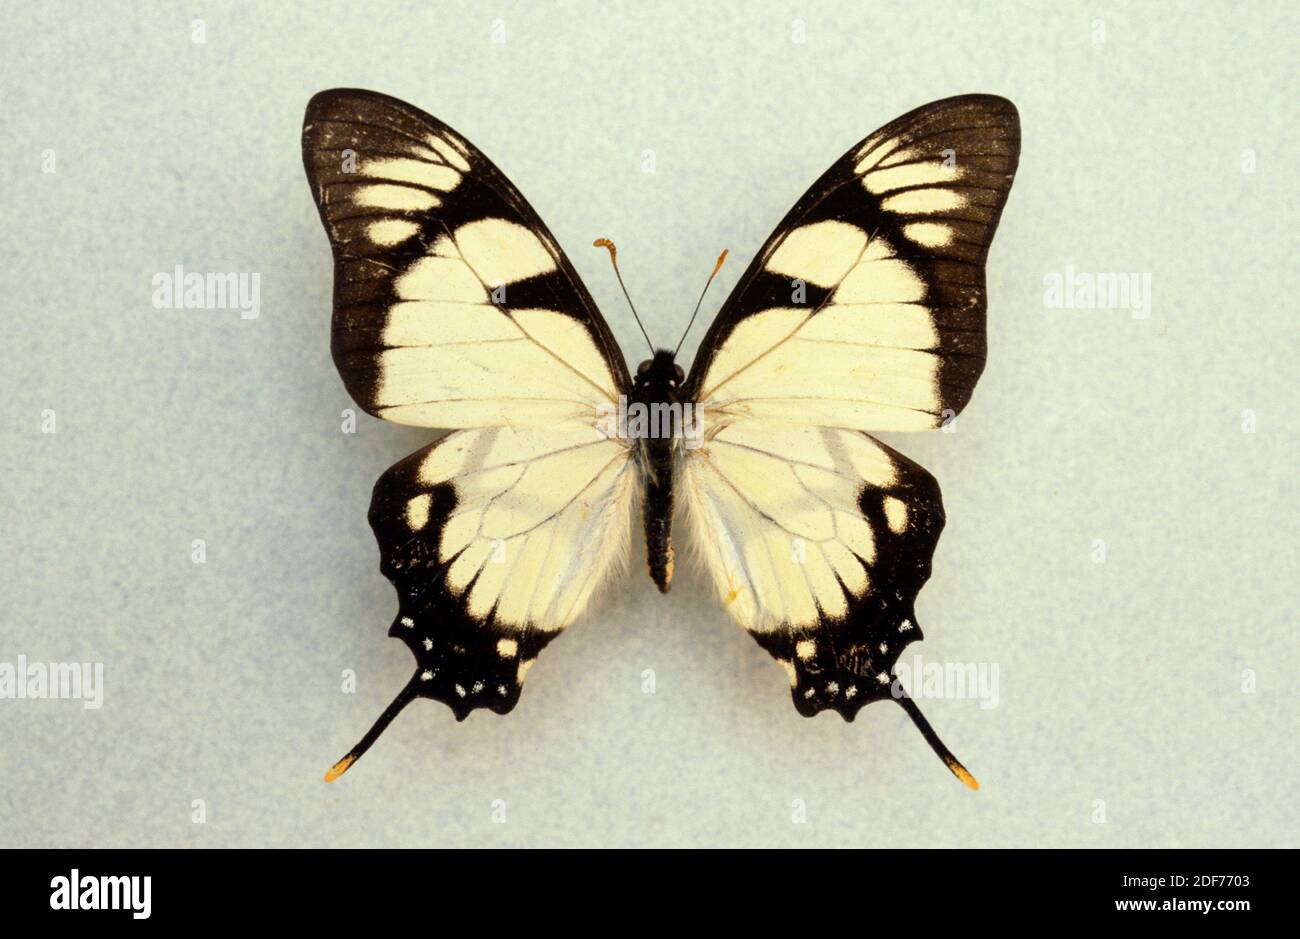 Dolicaon-Drachenschwanzschwalbenschwanz (Eurytides dolicaon) ist ein Schmetterling, der in Mittel- und Südamerika beheimatet ist. Erwachsene, dorsale Seite. Stockfoto